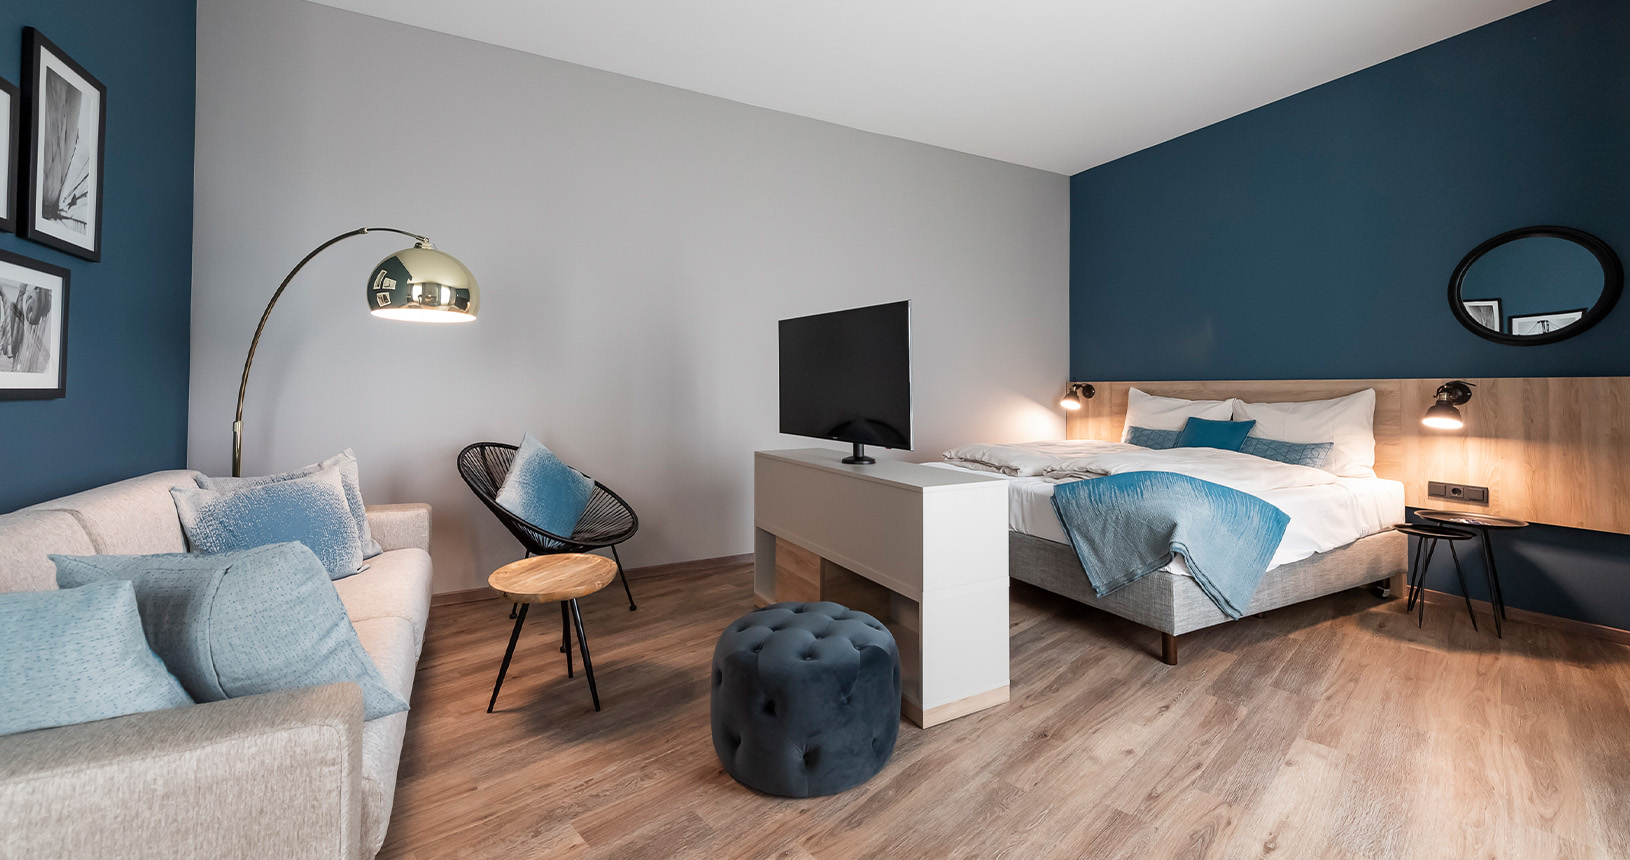 Hotelzimmer mit flexiblem TV-Board und Holz-Bettrückwand